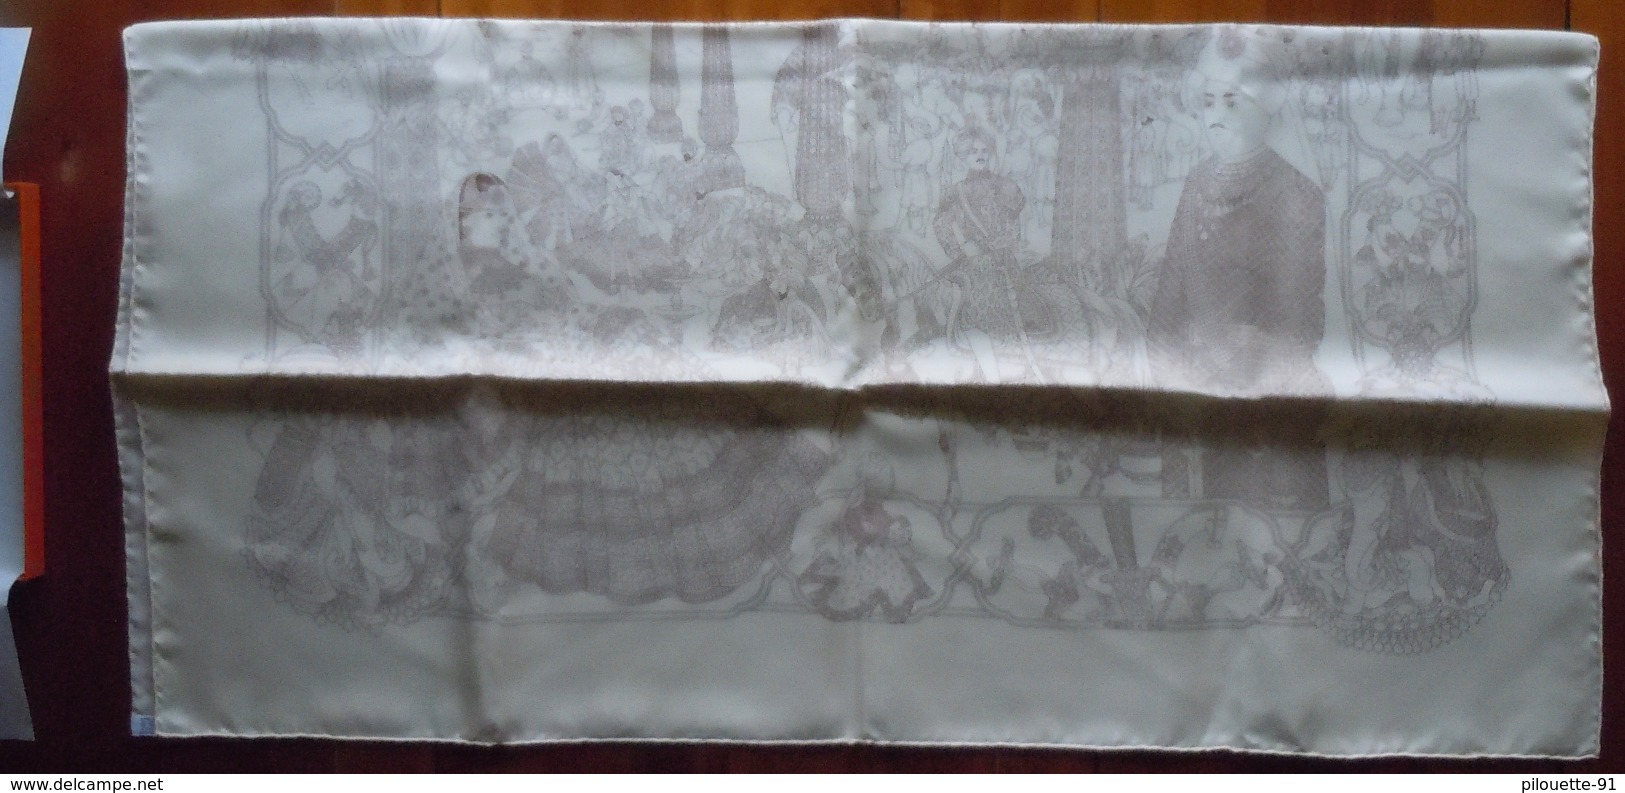 Authentique carré / foulard en soie Hermès  "Splendeur des Maharajas"  de Catherine Baschet 2002